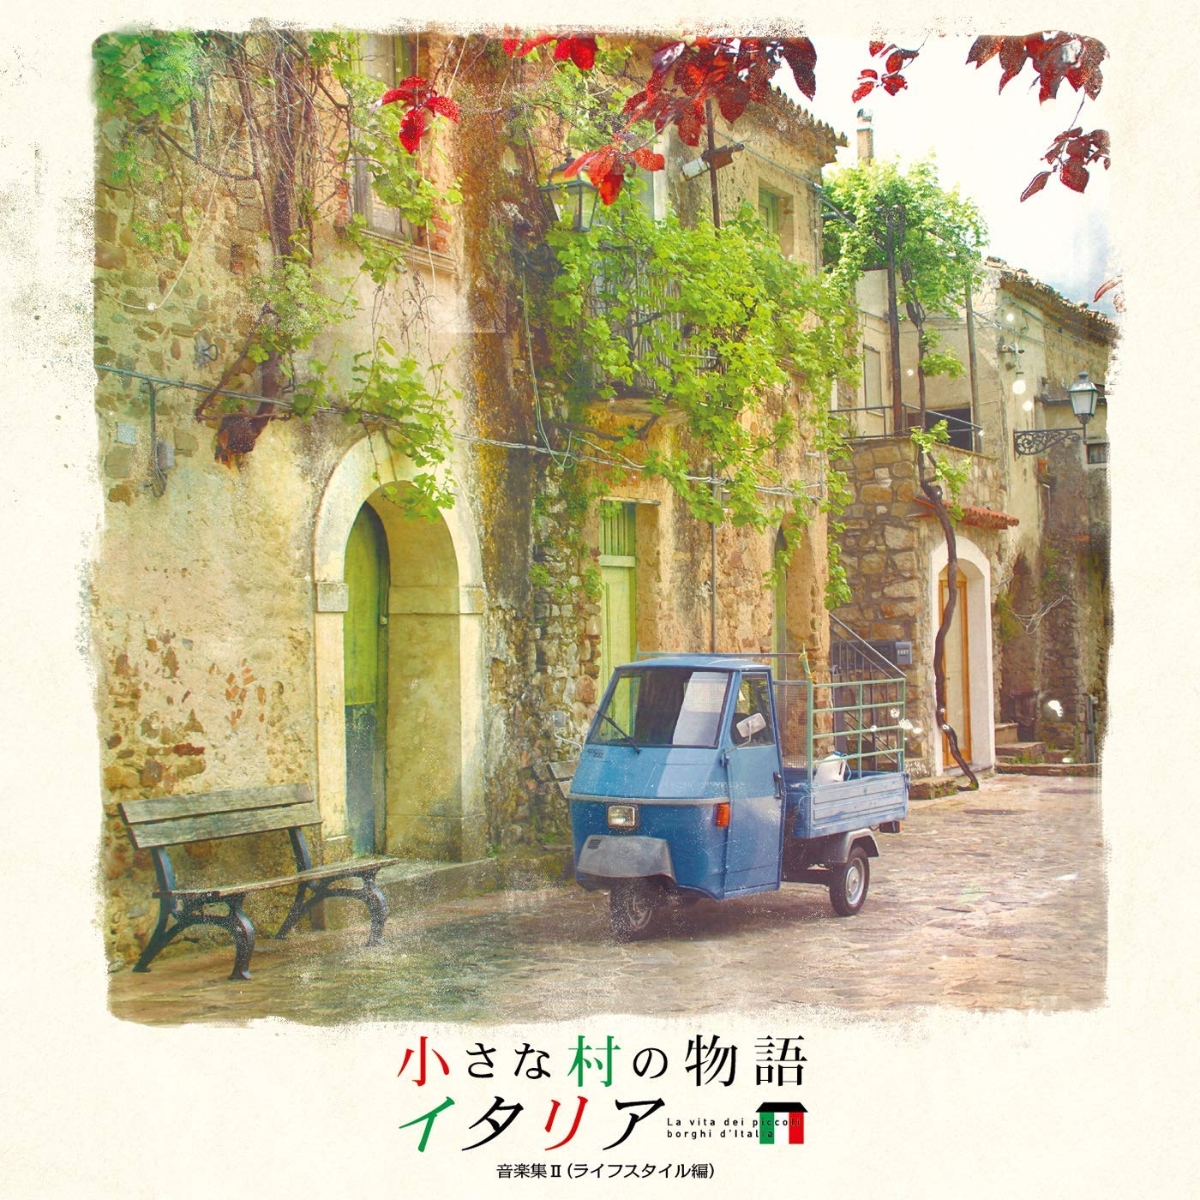 楽天ブックス: 小さな村の物語 イタリア 音楽集Vol.2 (ライフスタイル 